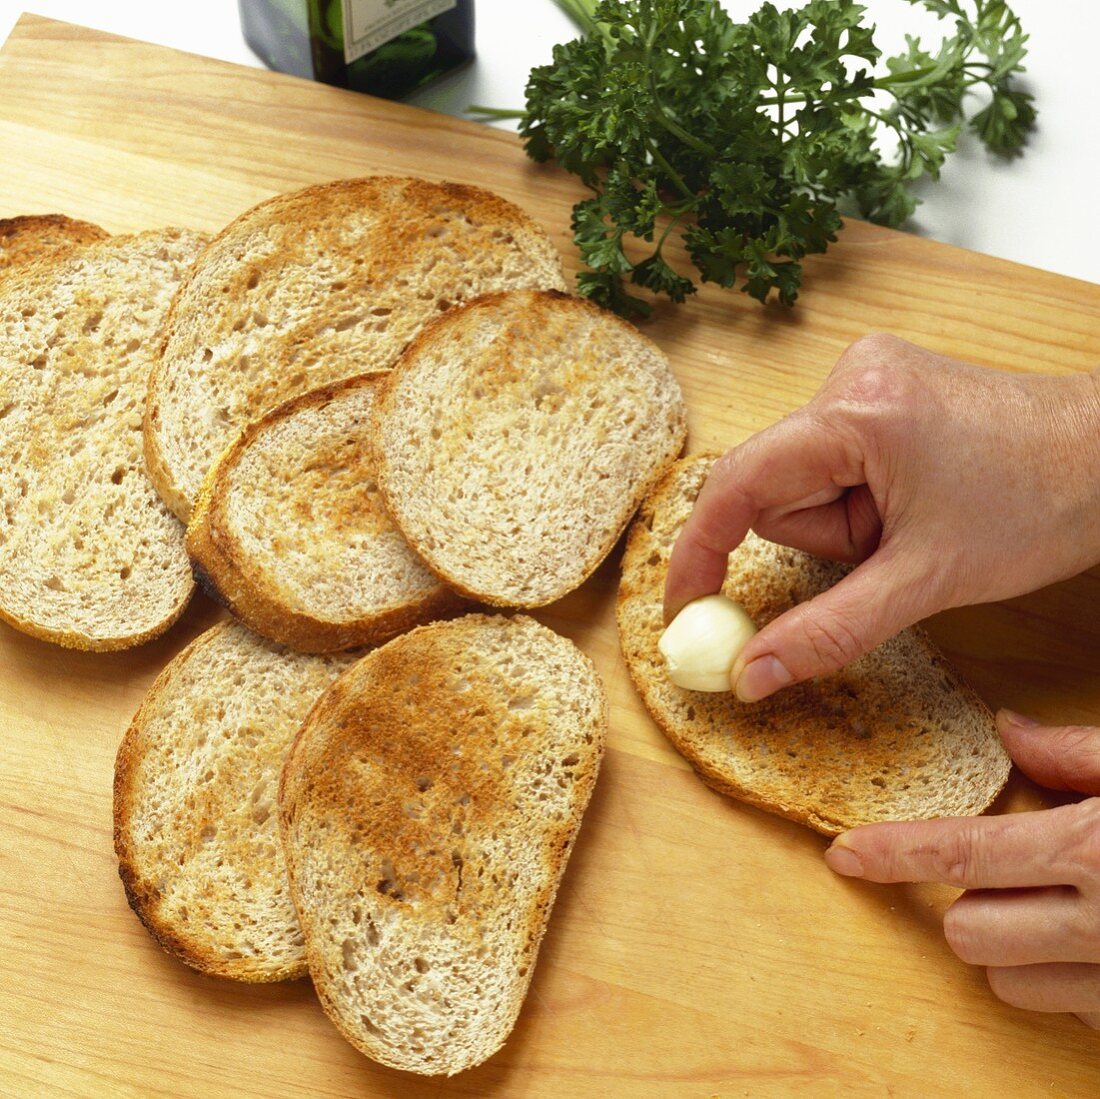 Getoastete Brote mit Knoblauch einreiben